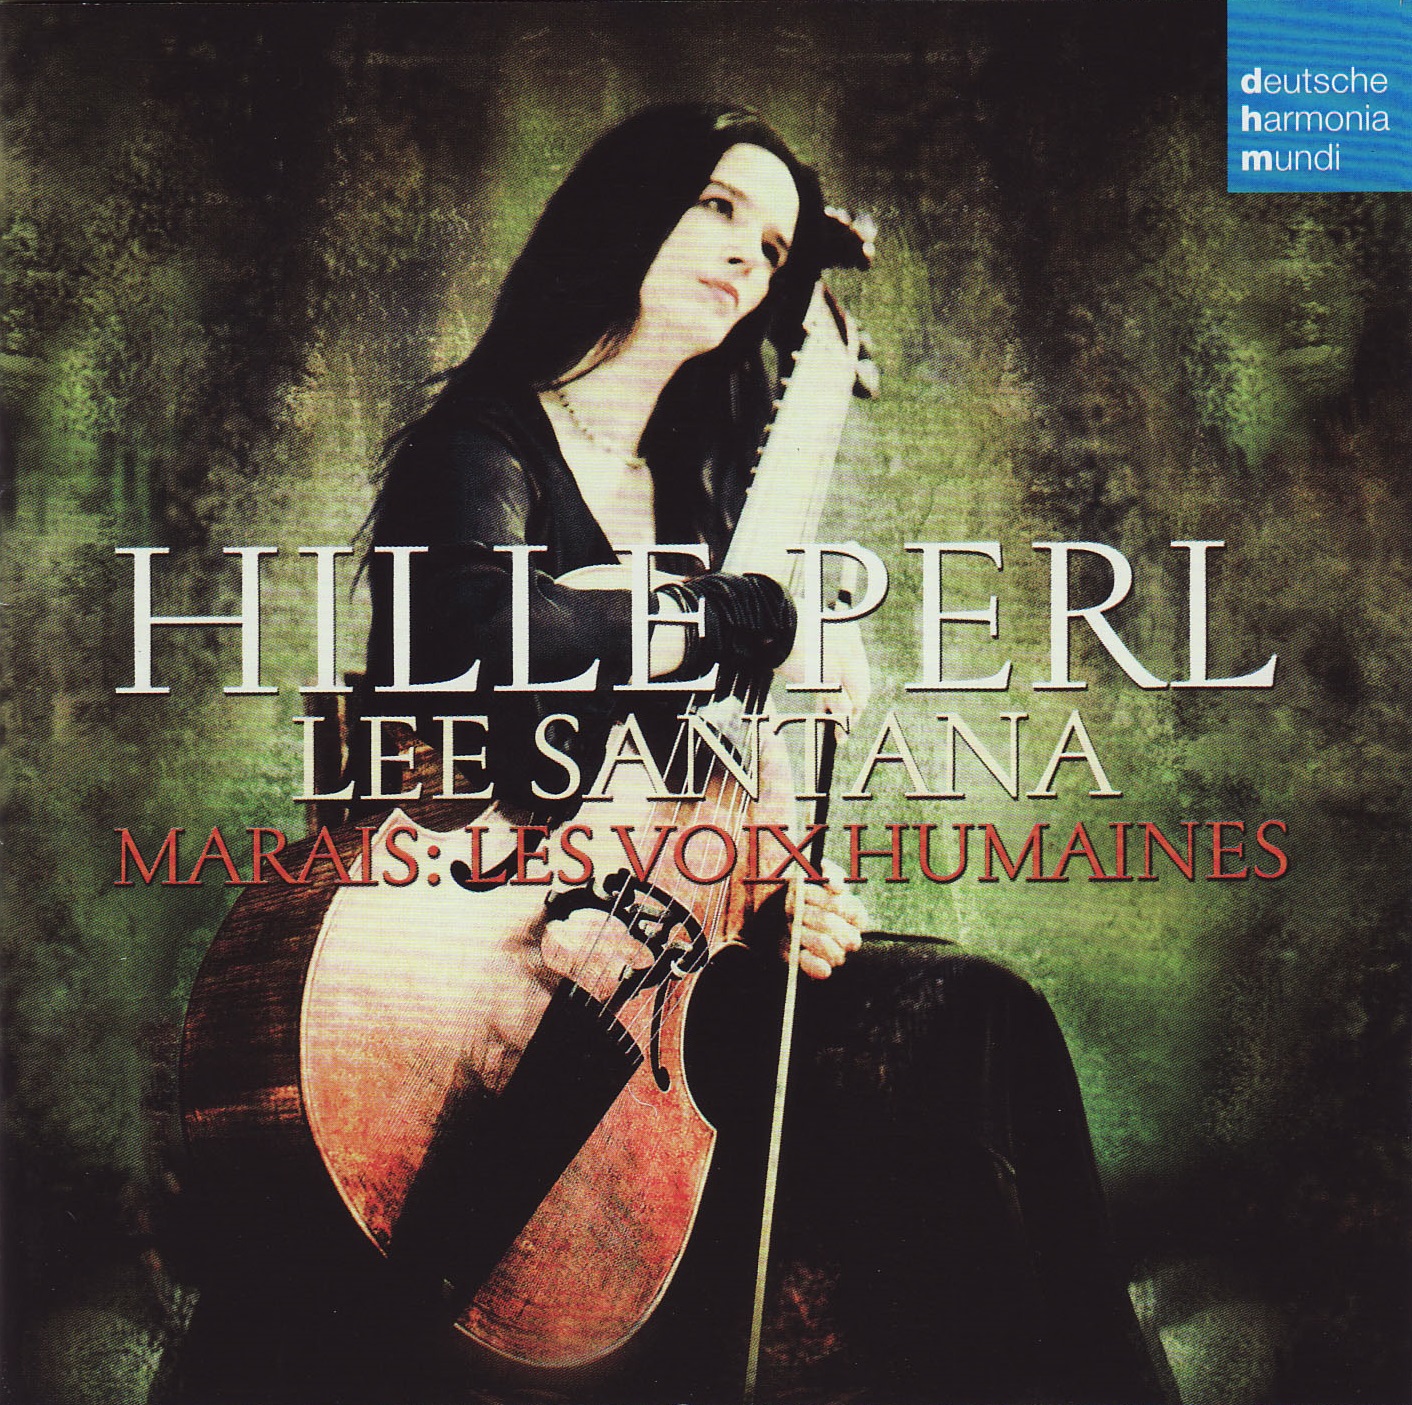 Hille Perl - Marais: Les Voix Humaines (2008) [FLAC 24bit/48kHz]